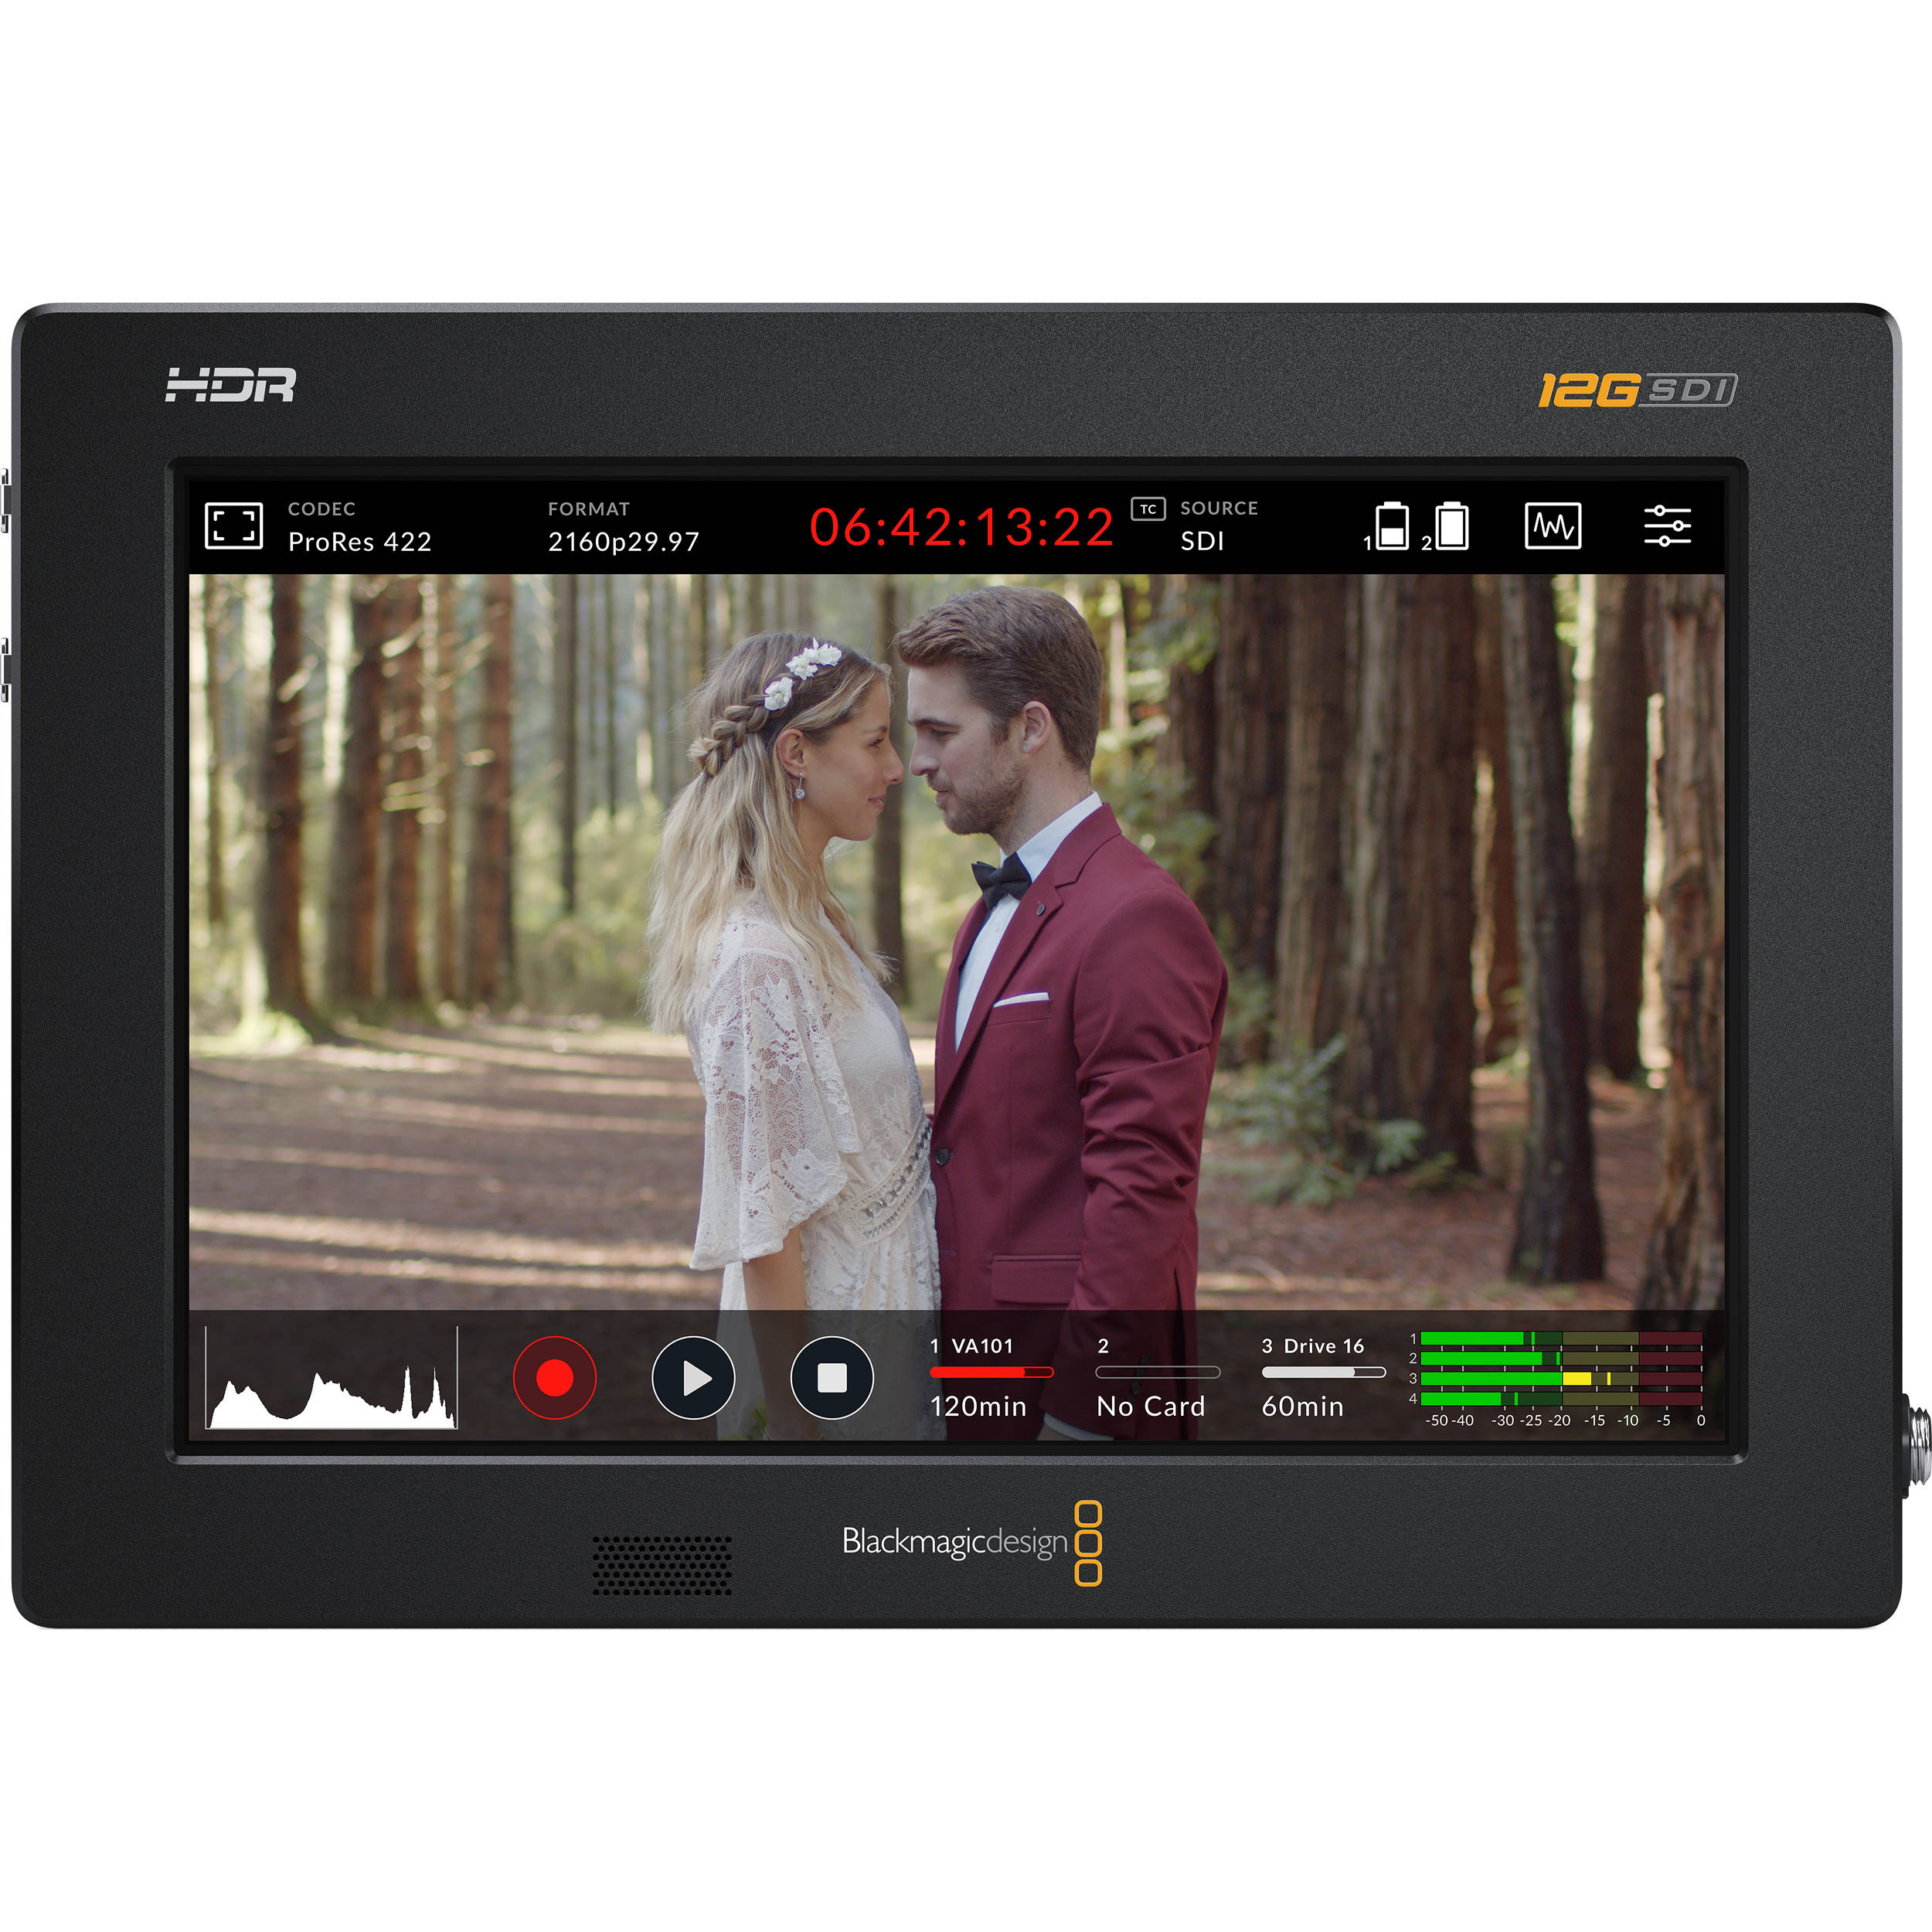 Blackmagic Design Video Assist 7'' 12G HDR & Azden Professional Compact Cine Mic with Mini-XLR Output Bundle